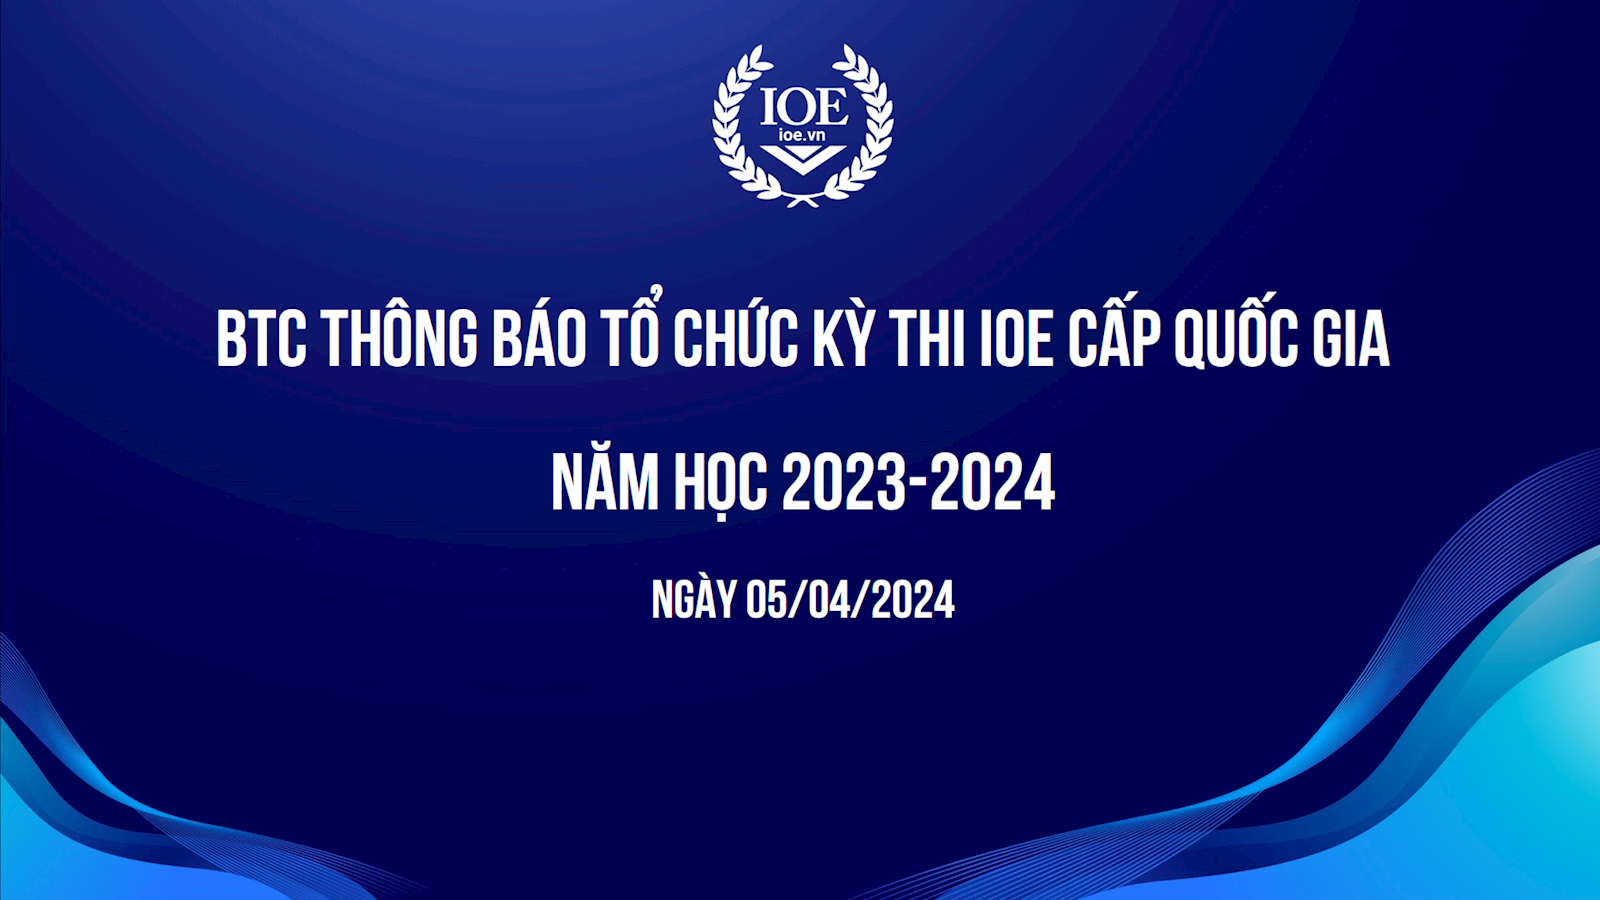 BTC thông báo tổ chức kỳ thi IOE cấp quốc gia năm học 2023-2024